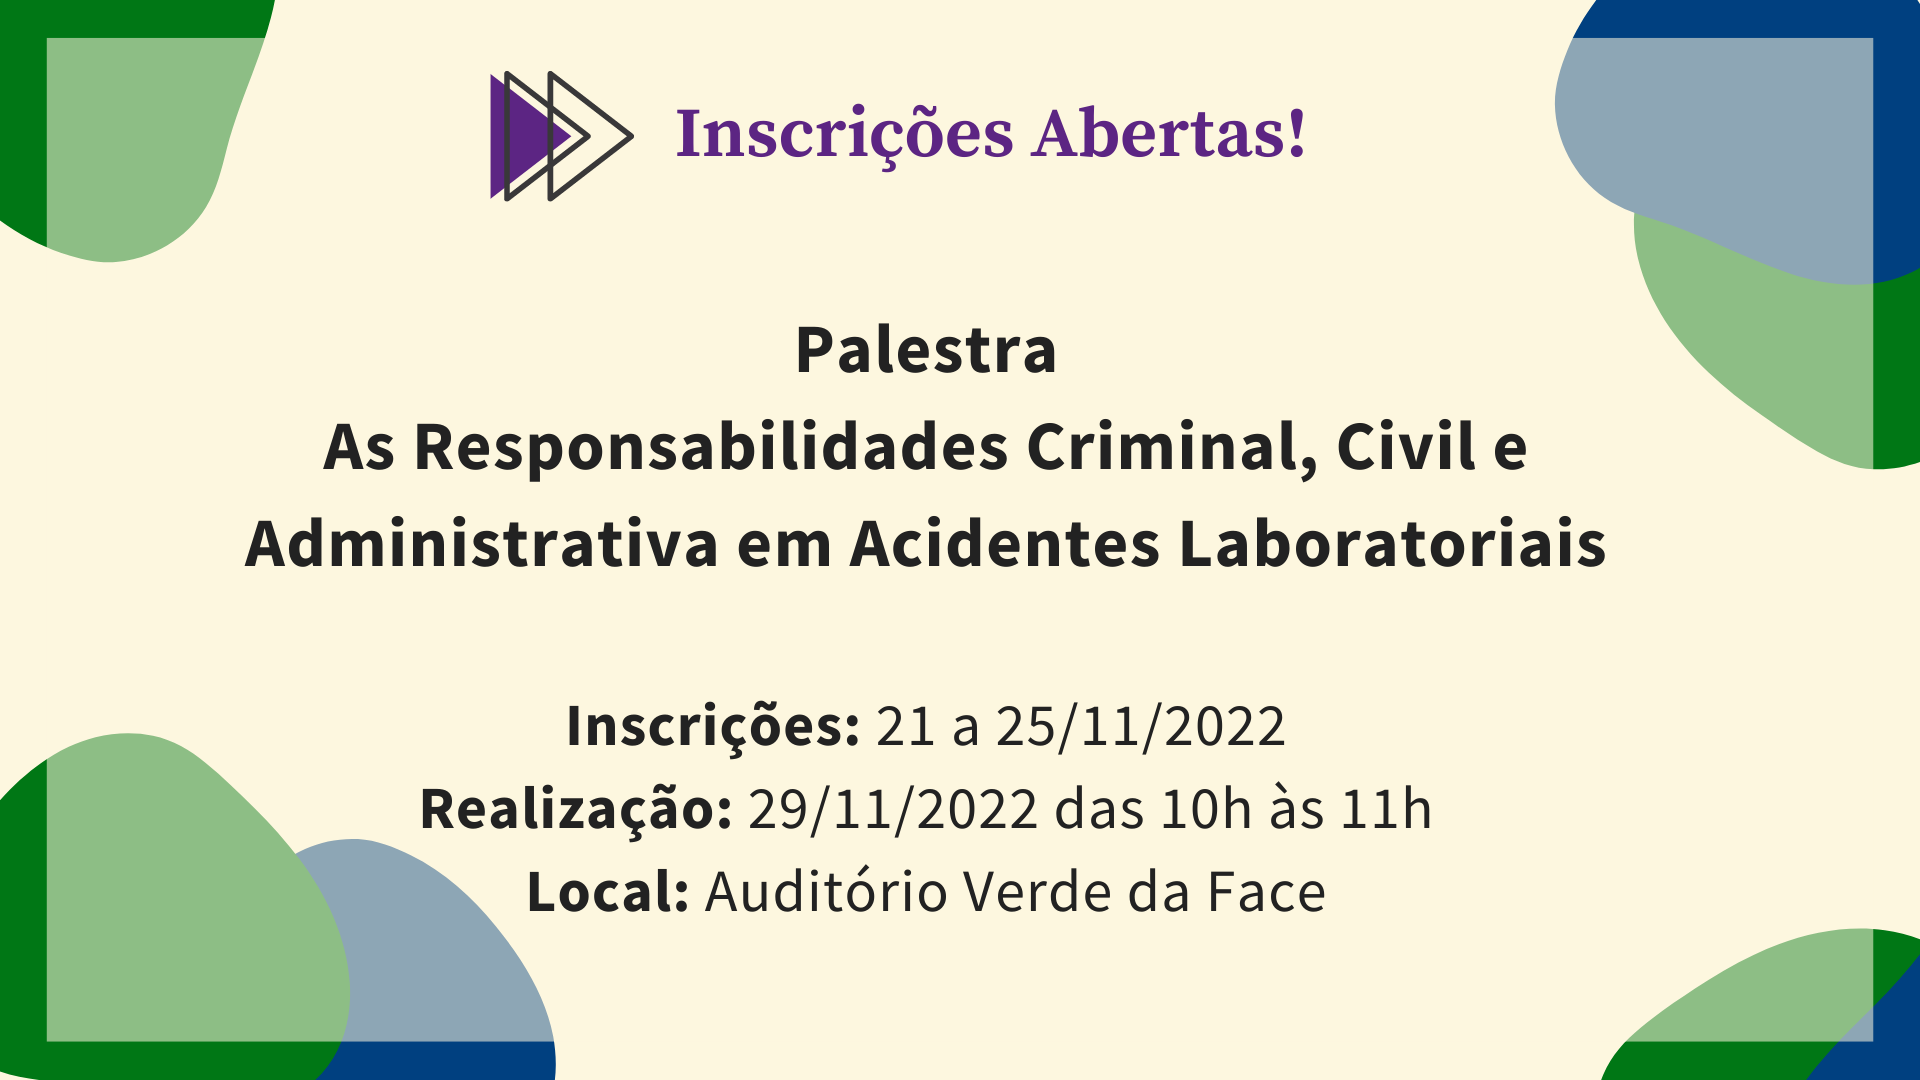 Palestra As Responsabilidades Criminal, Civil e Administrativa em Acidentes Laboratoriais